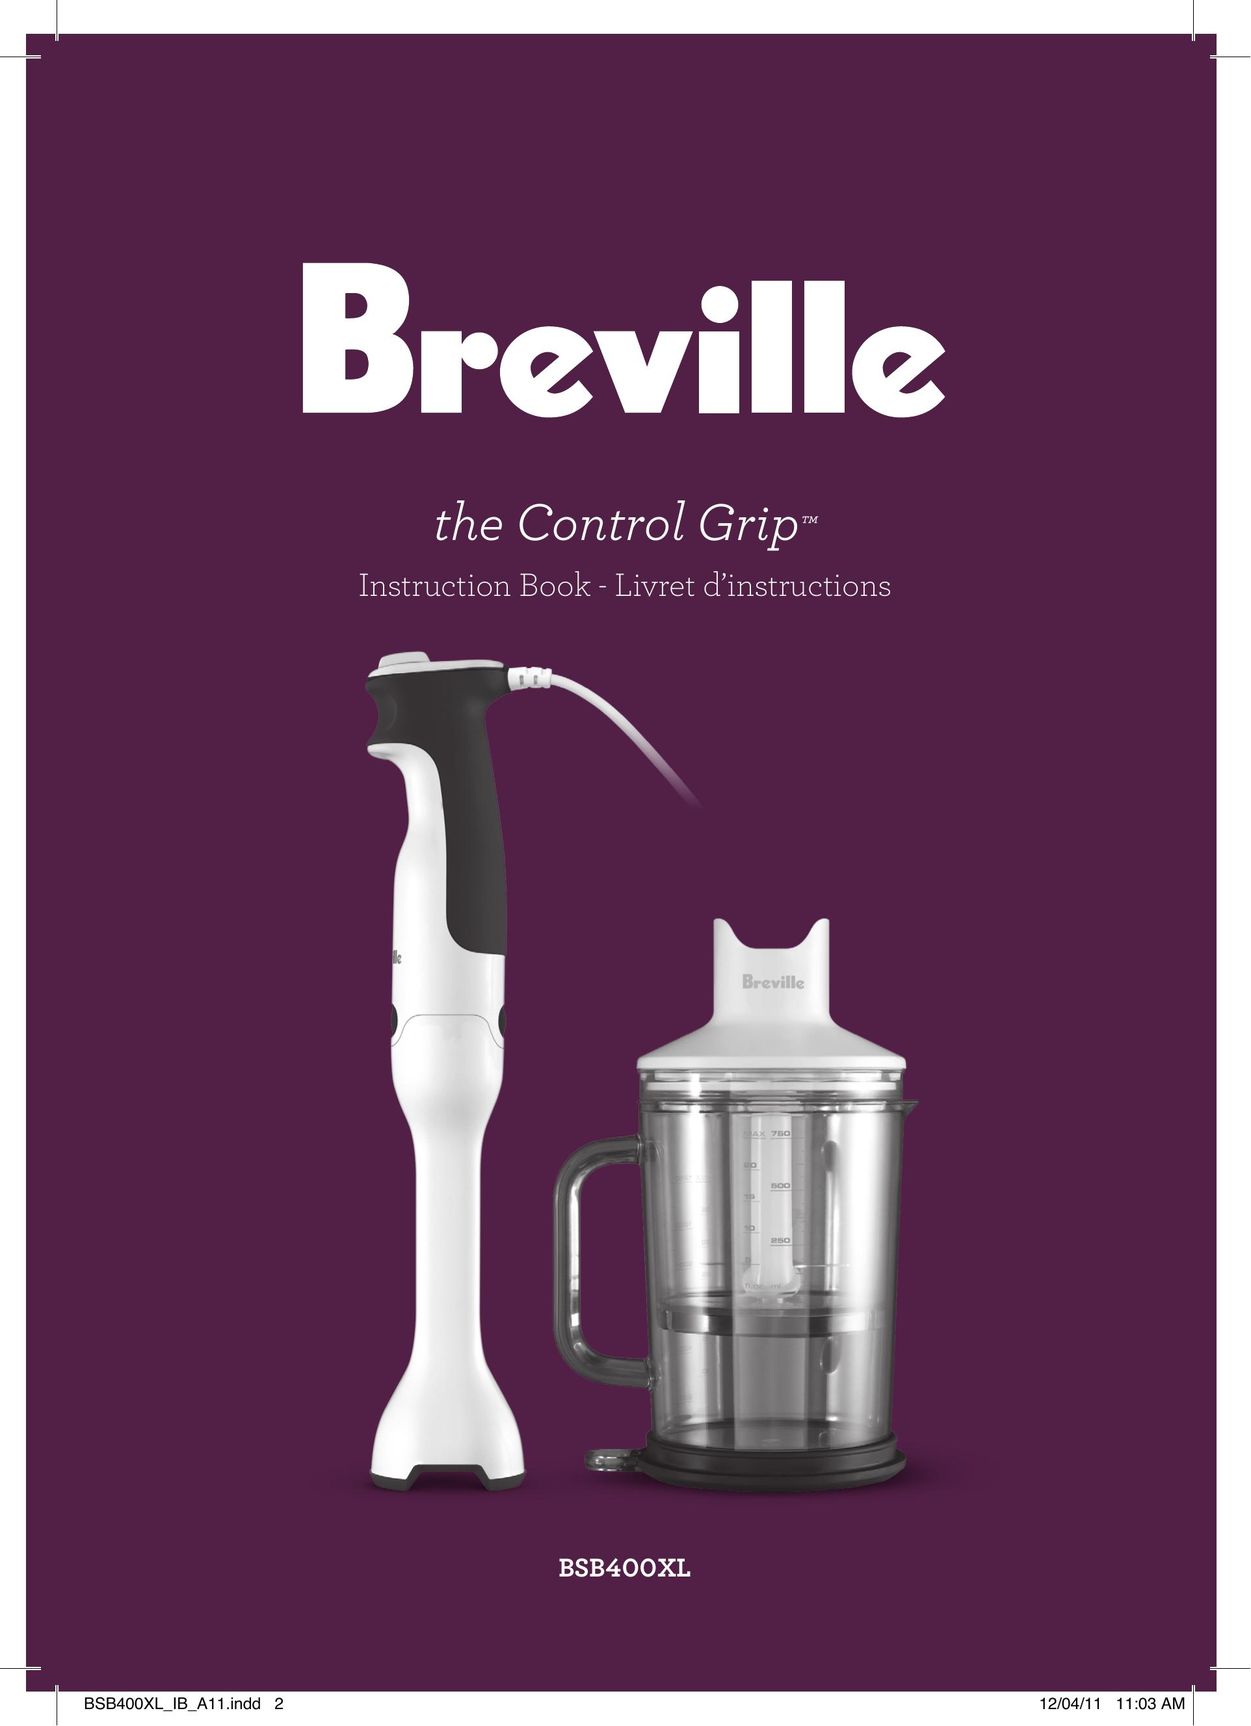 Breville BSB400XL Blender User Manual